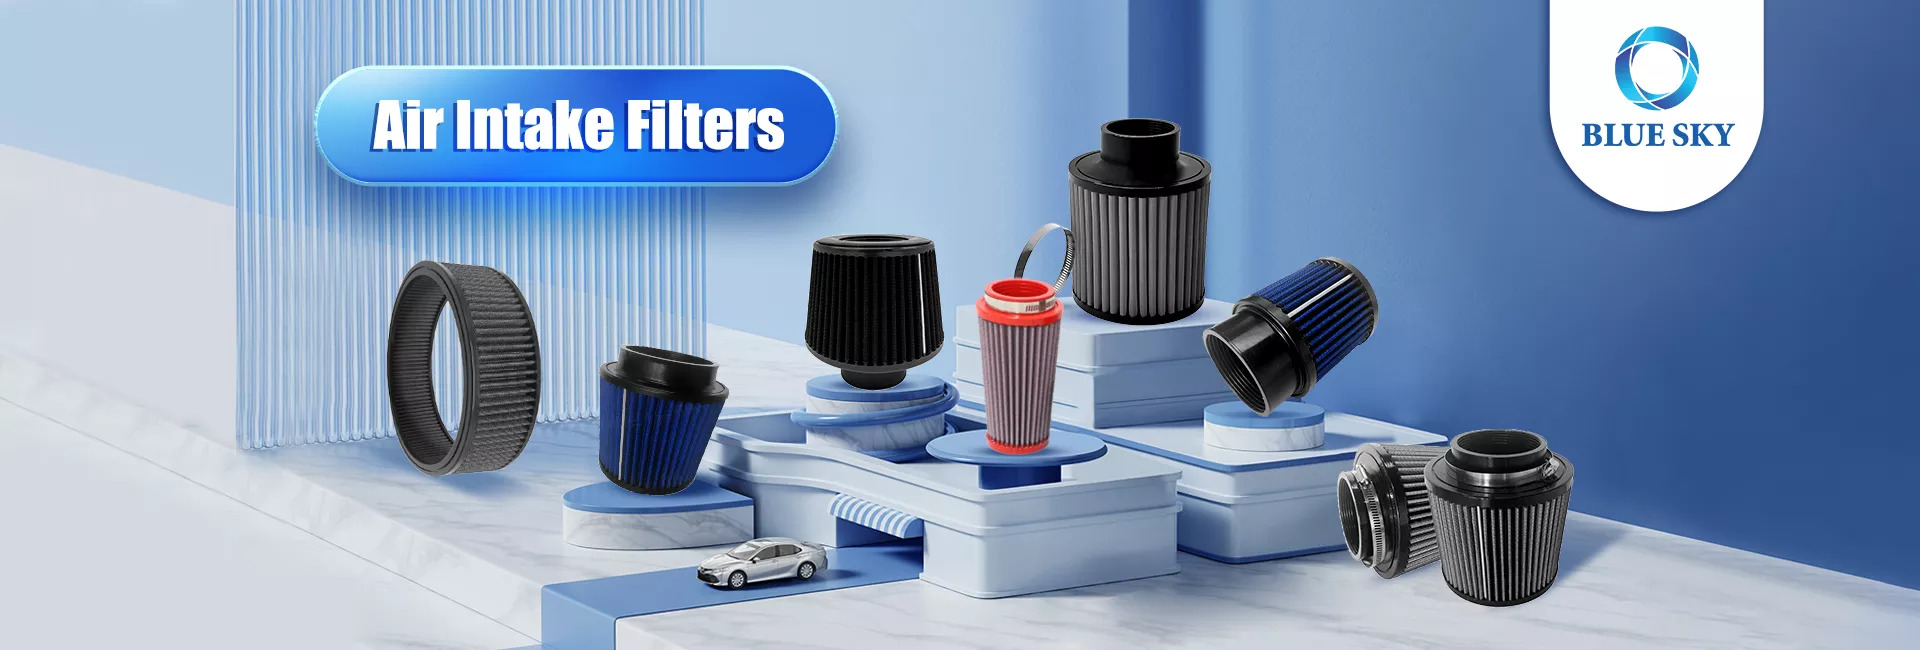 Productos calientes del filtro de entrada de aire del filtro auto de las ventas del cielo azul